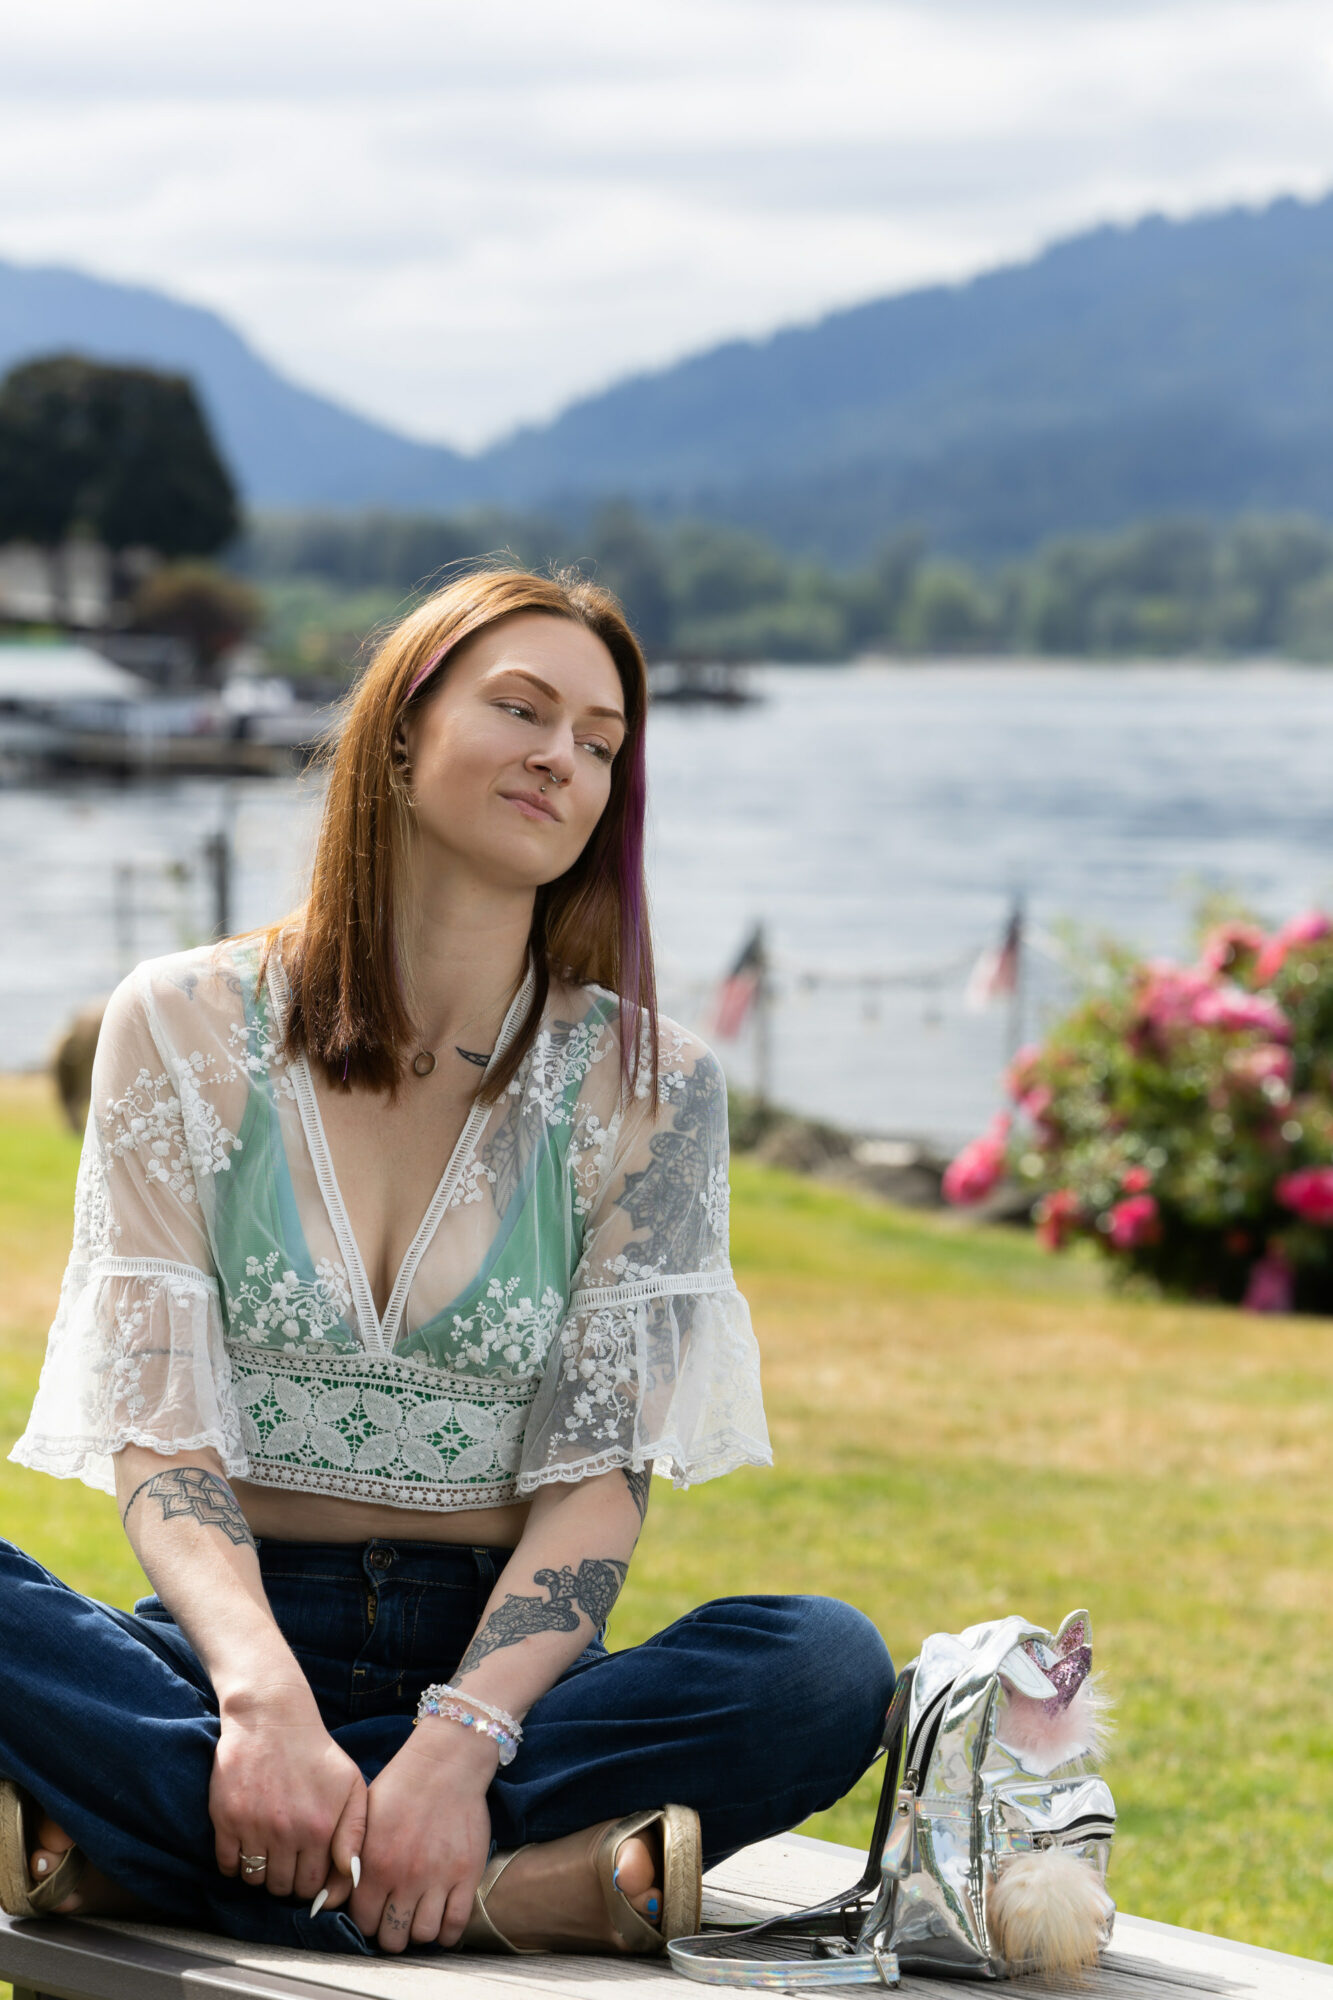 Miembro de Empowered Voices vistiendo un top verde y de encaje y jeans azules, sobre el césped con un lago y montañas al fondo